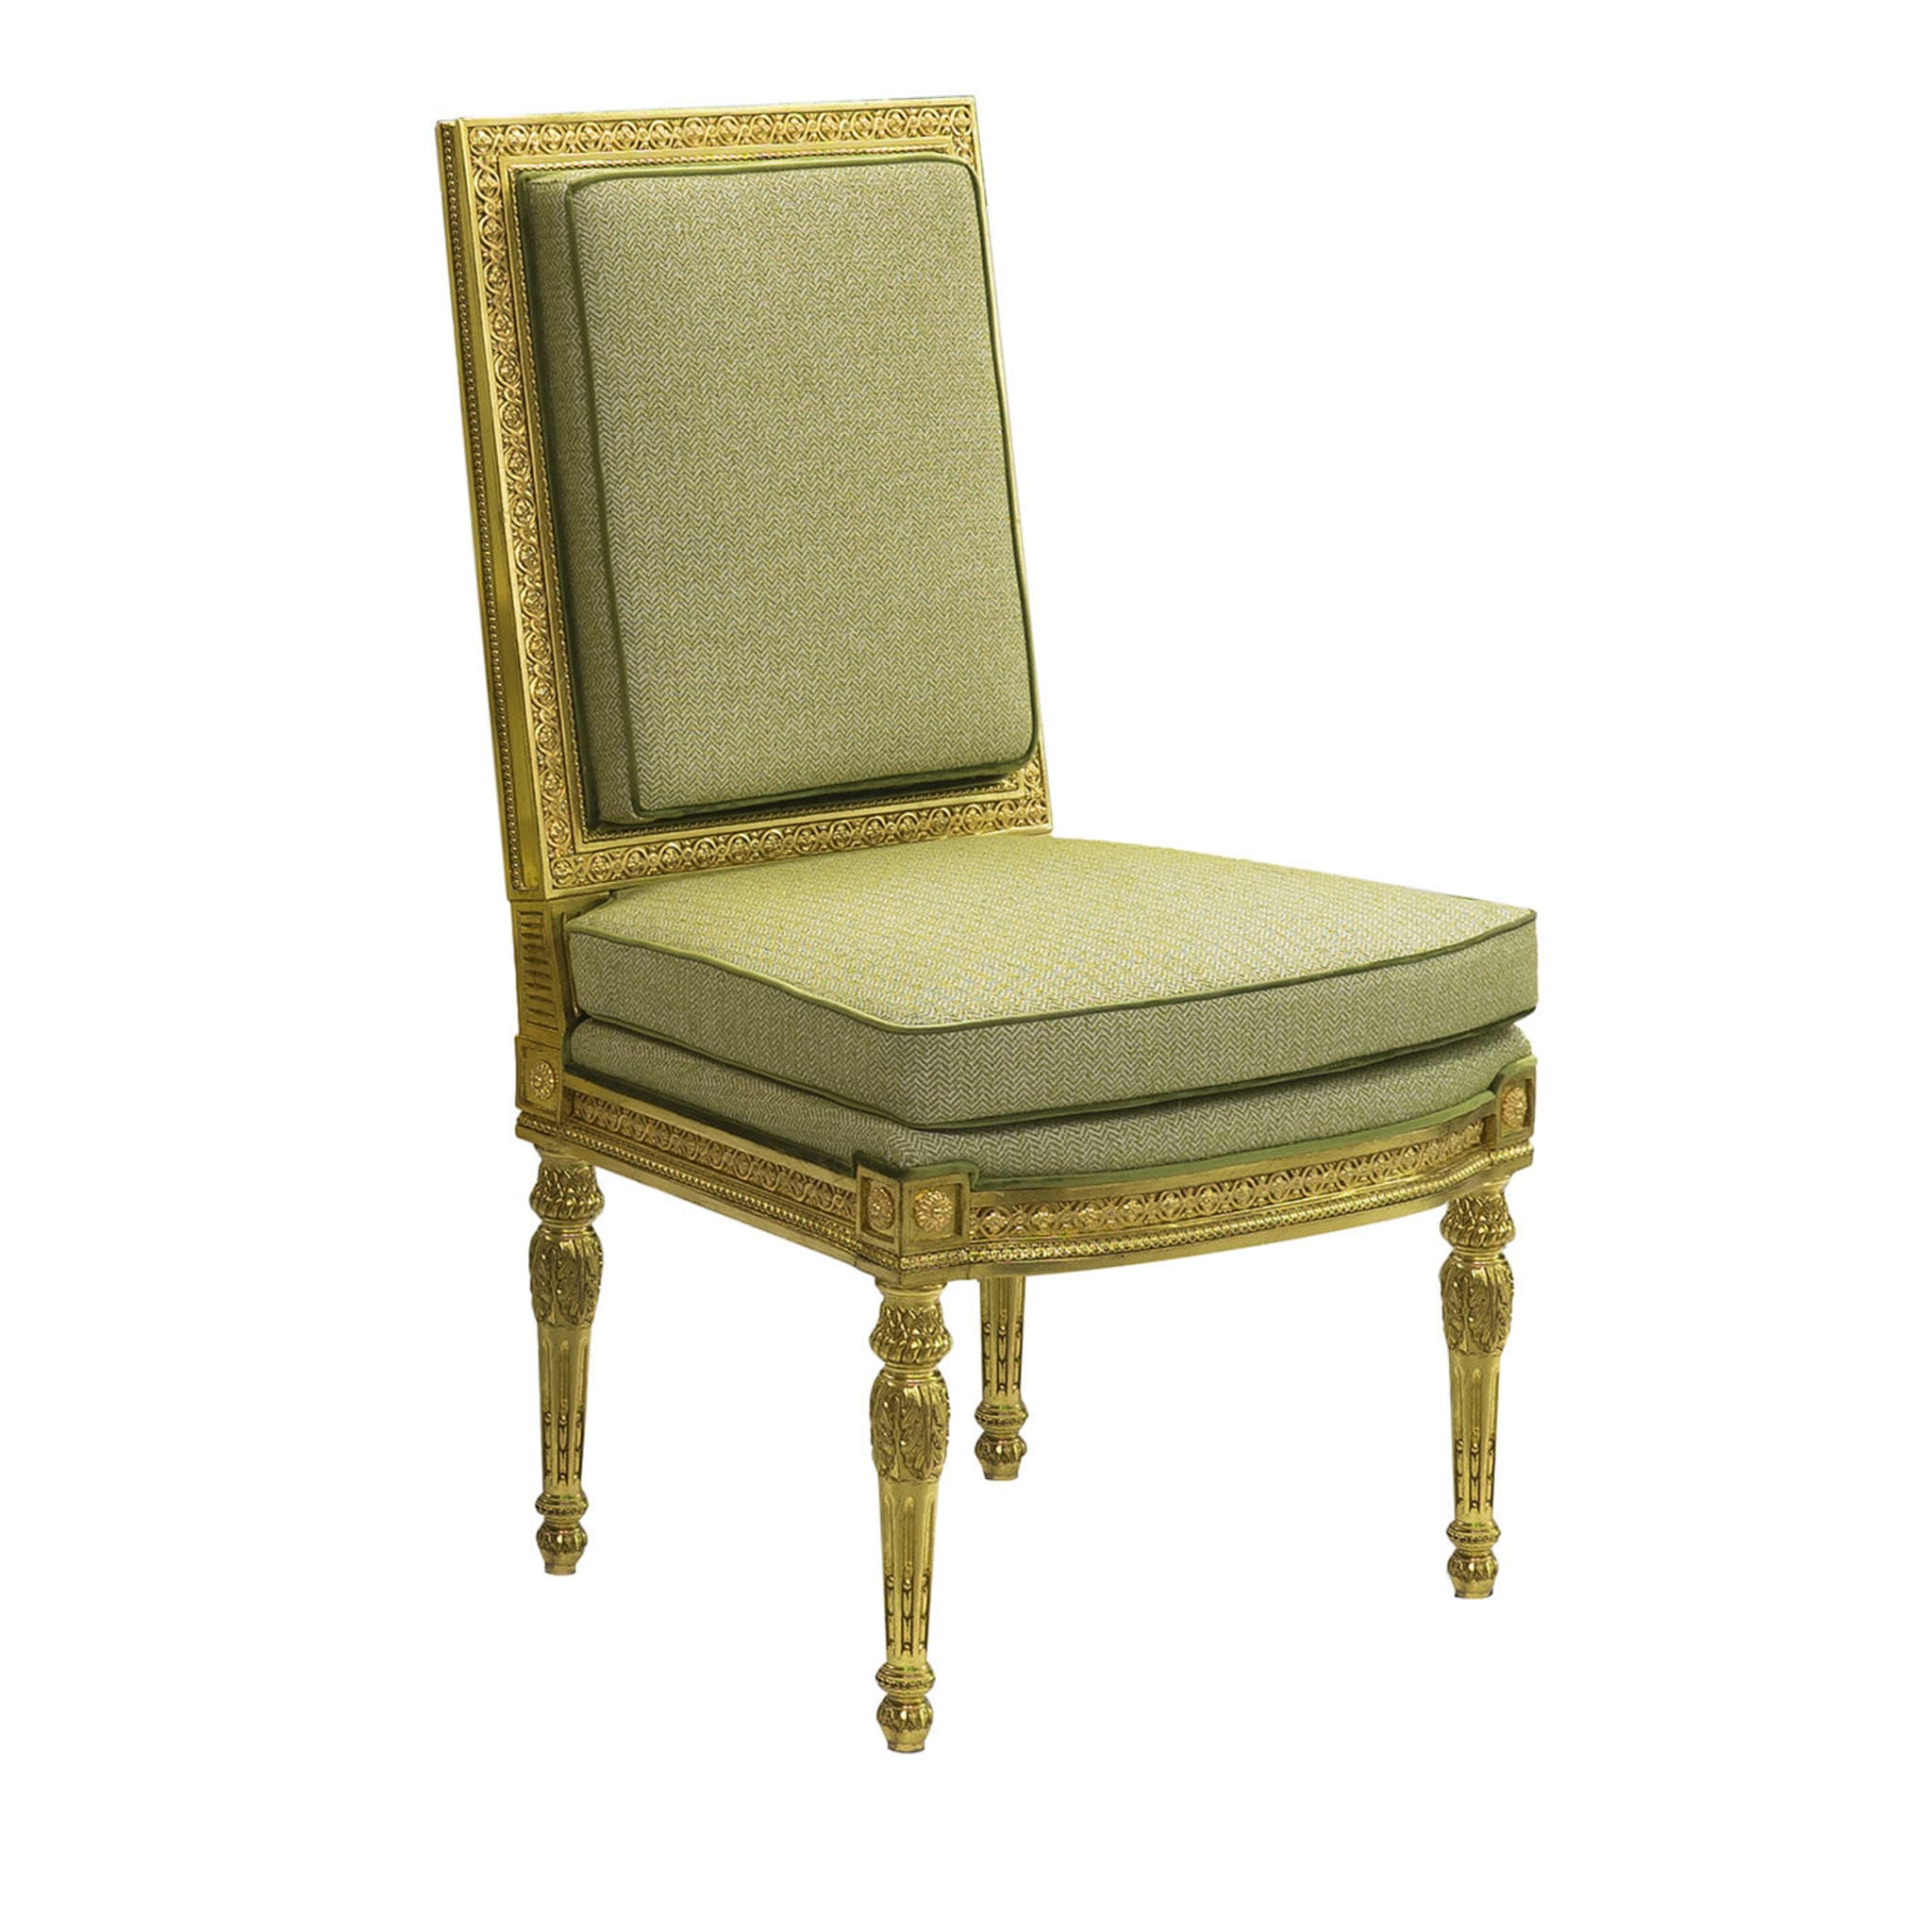 Louis XVI style Chair #2 - Main view